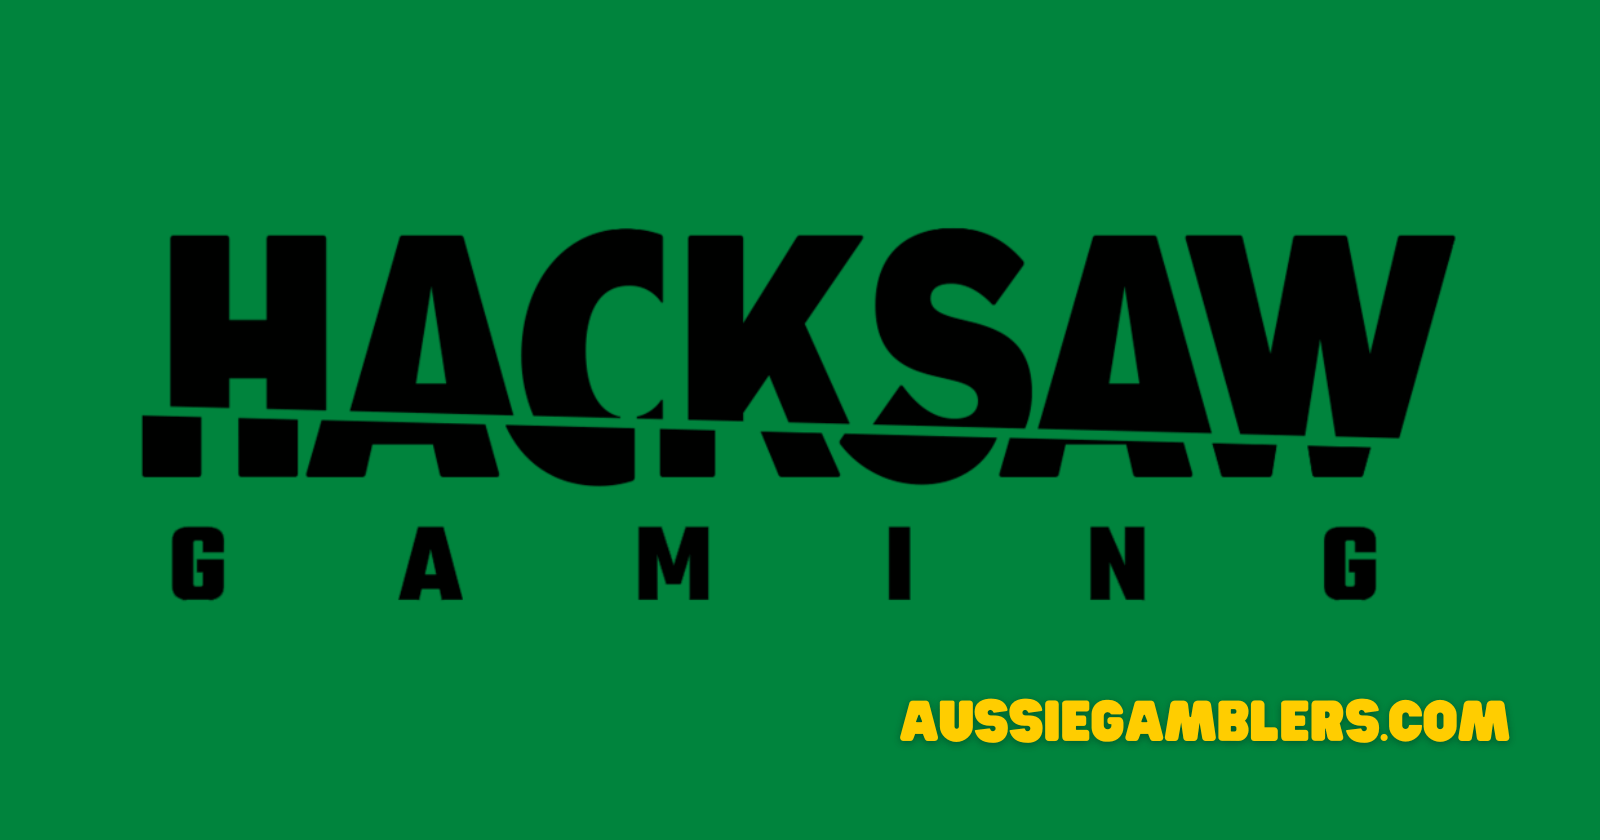 Hacksaw gaming banner